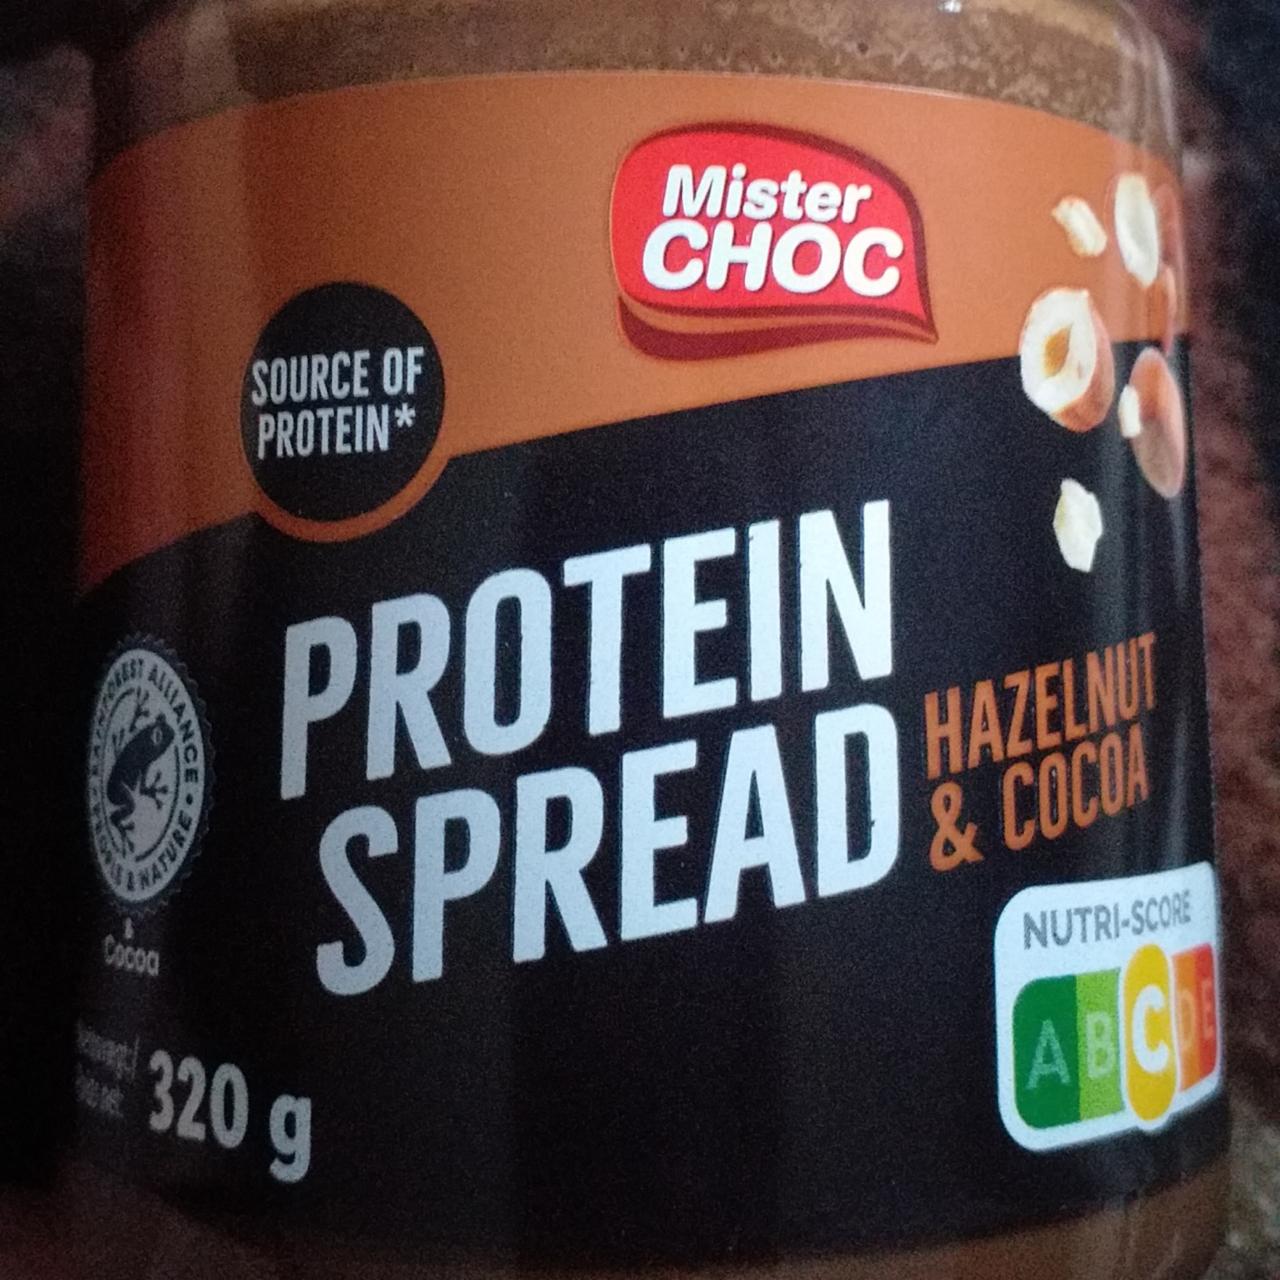 Zdjęcia - Protein spread hazelnut and cocoa Mister Choc